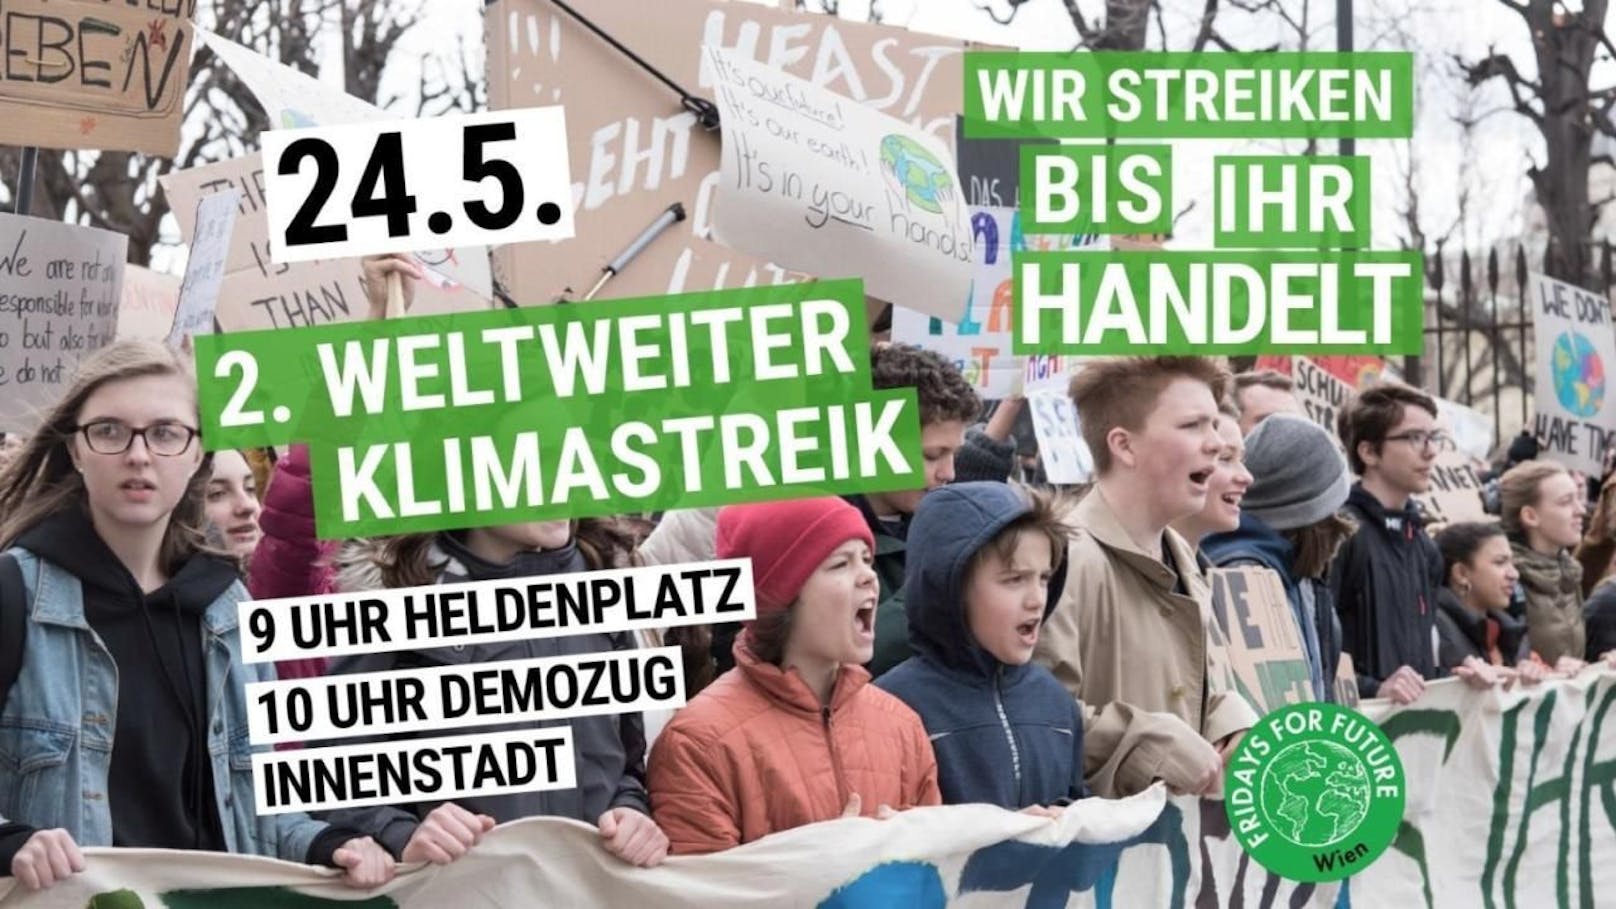 5.000 Demonstranten werden am Freitag in Wien erwartet.